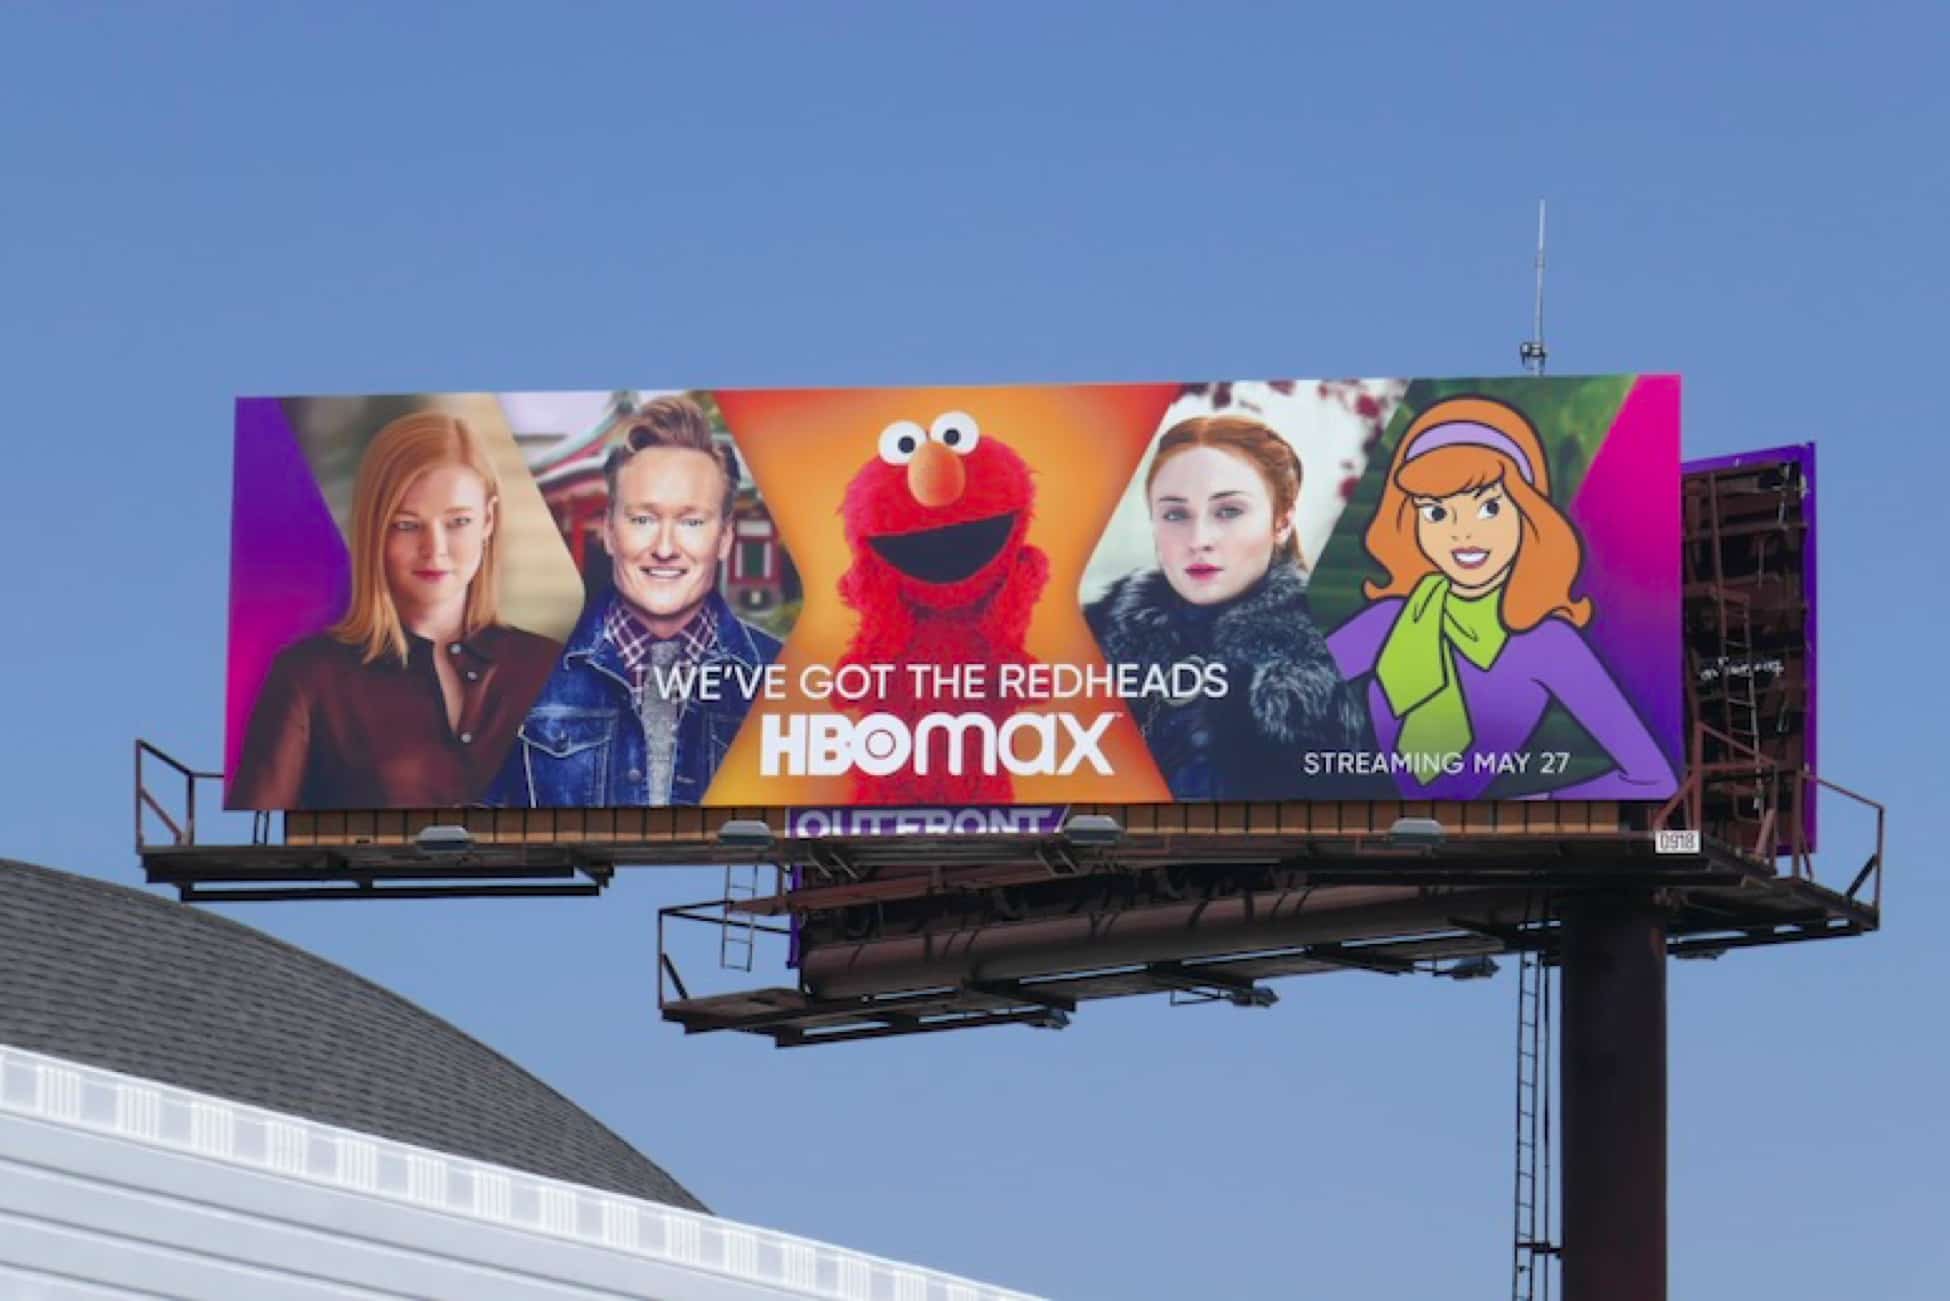 Quảng cáo Billboard của HBO